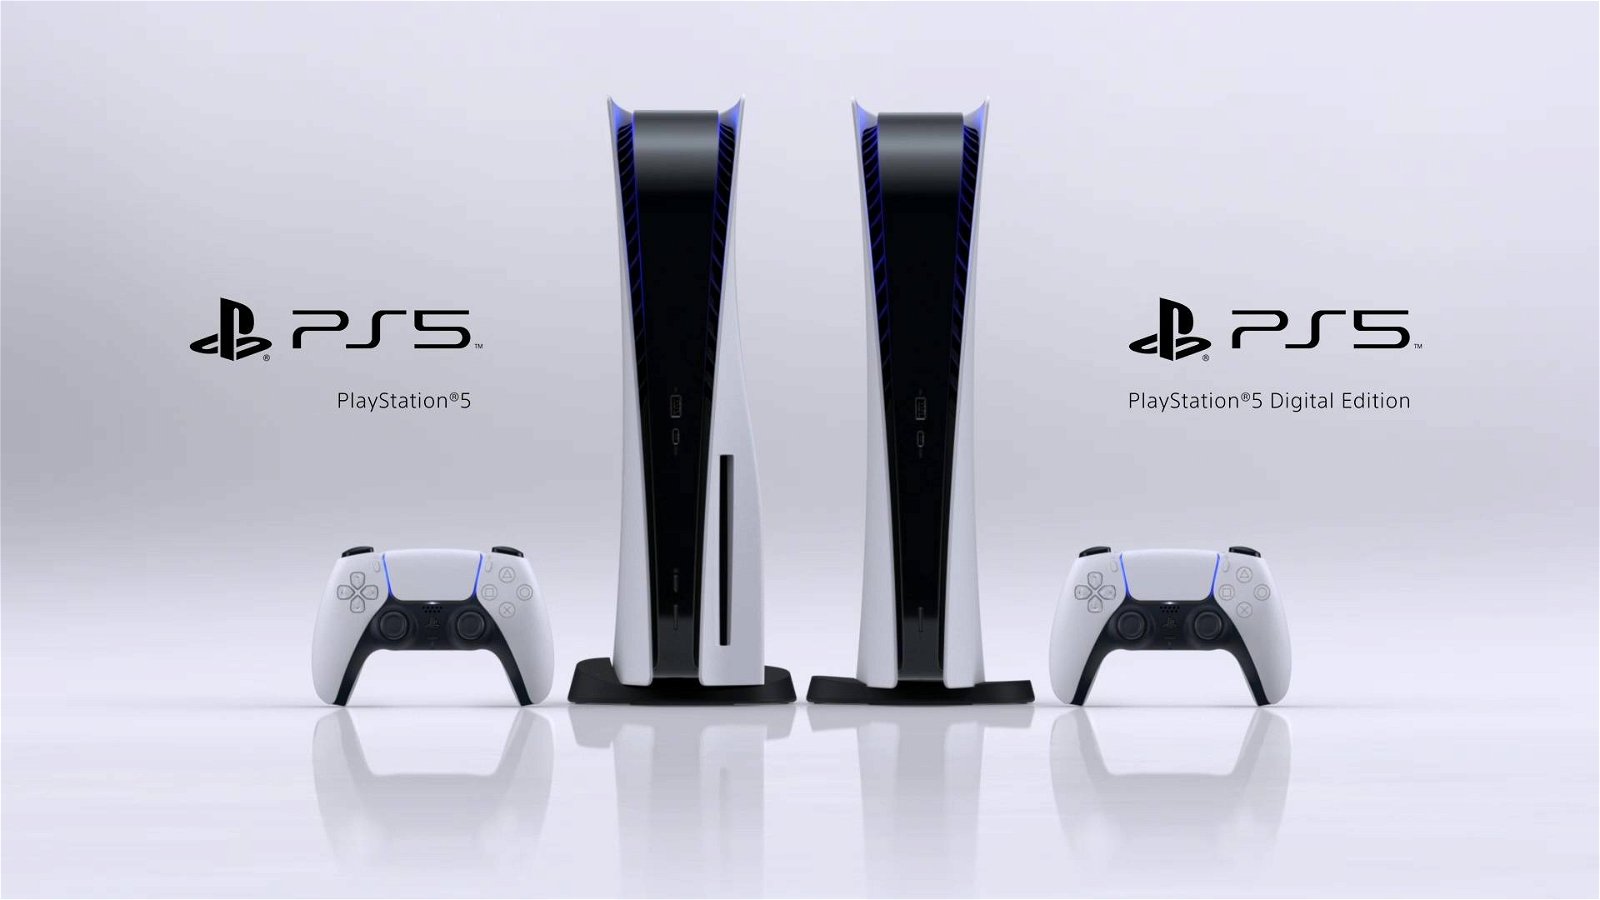 Immagine di PS5, prezzo dei due modelli: Digital Foundry ha calcolato la differenza